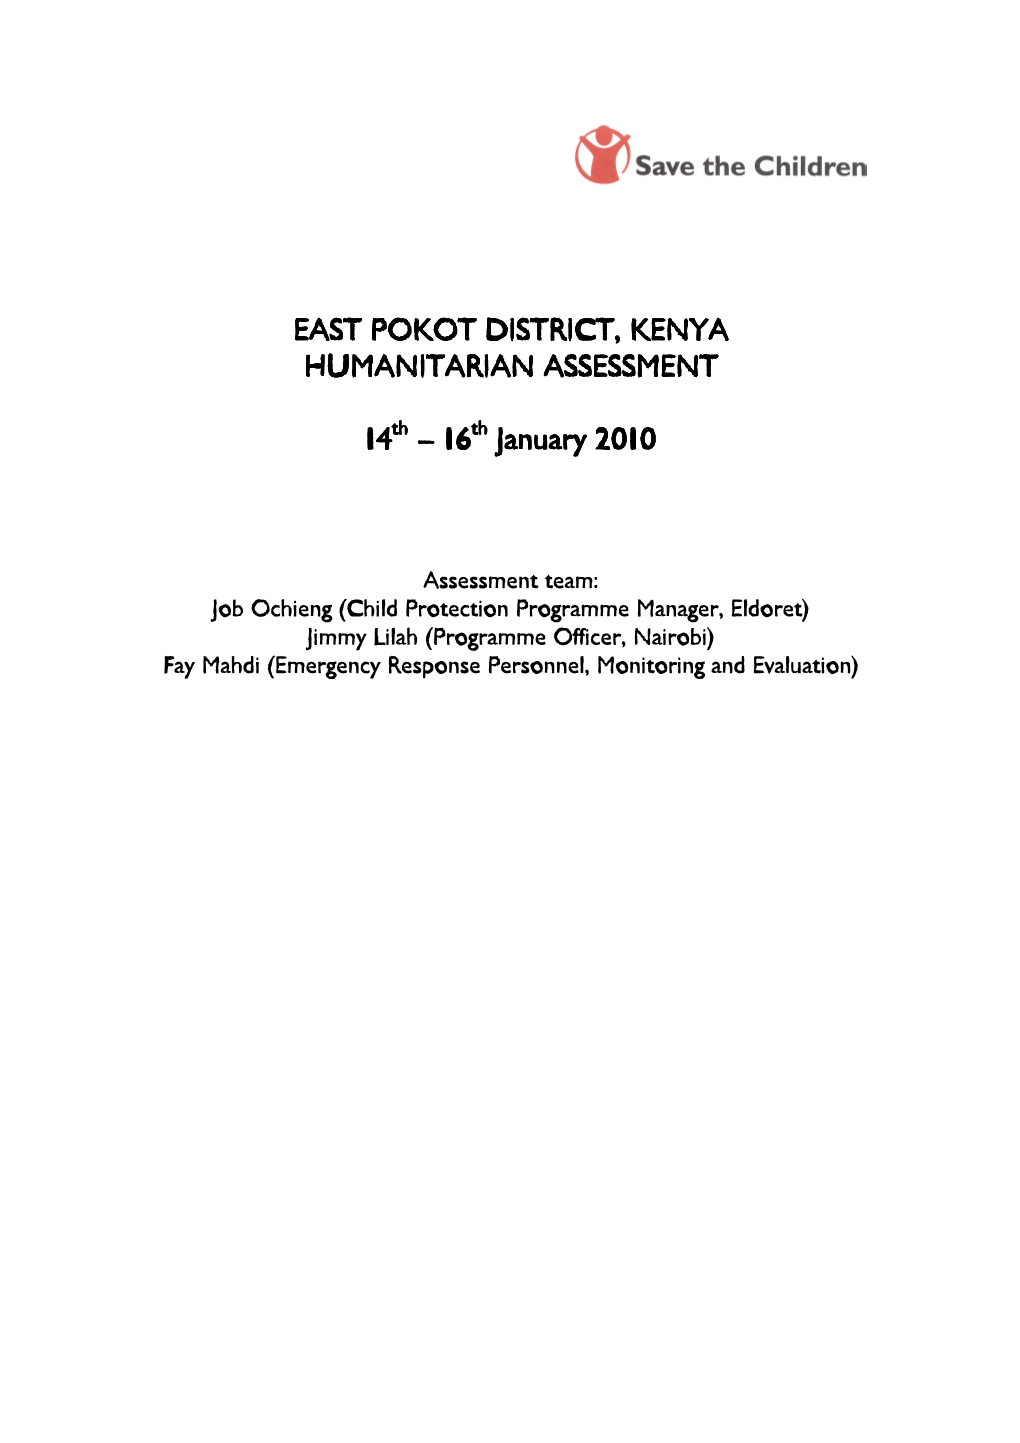 East Pokot East Pokot District District District, Kenya Humanitarian